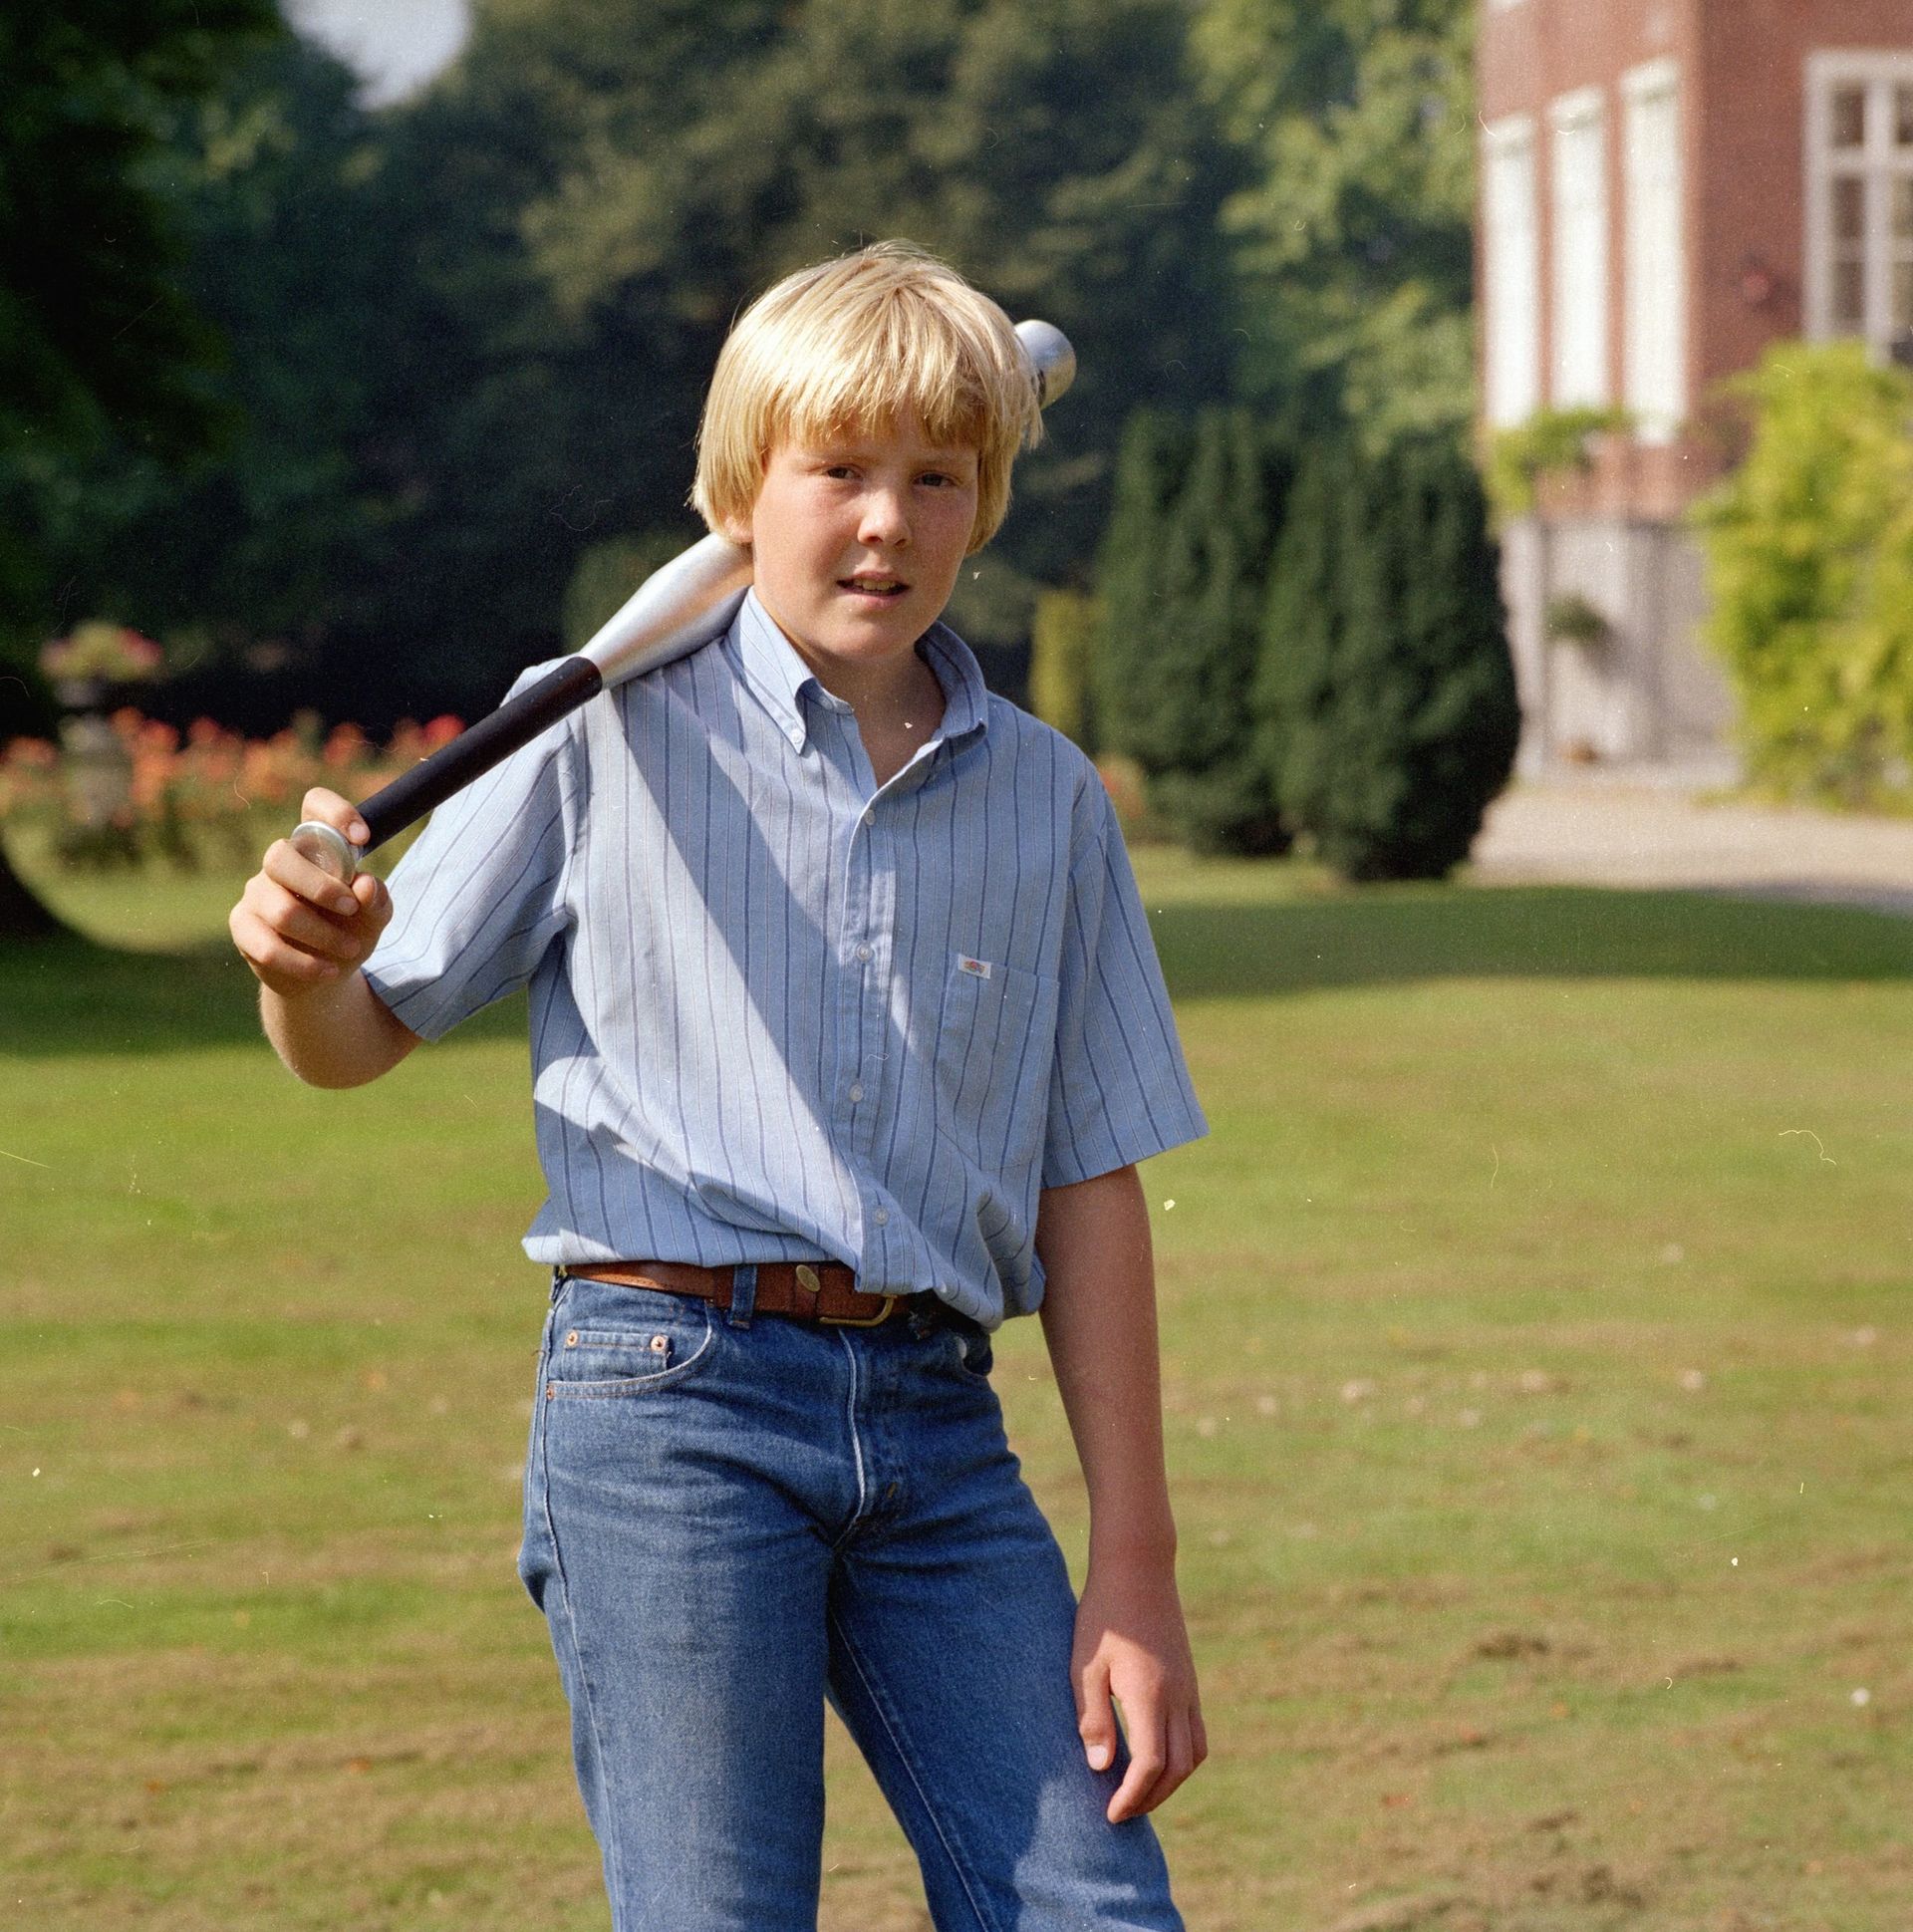 1981: het koninklijk gezin heeft zijn intrek genomen op Paleis Huis ten Bosch. De 14-jarige Willem-Alexander speelt een potje honkbal in de tuin.